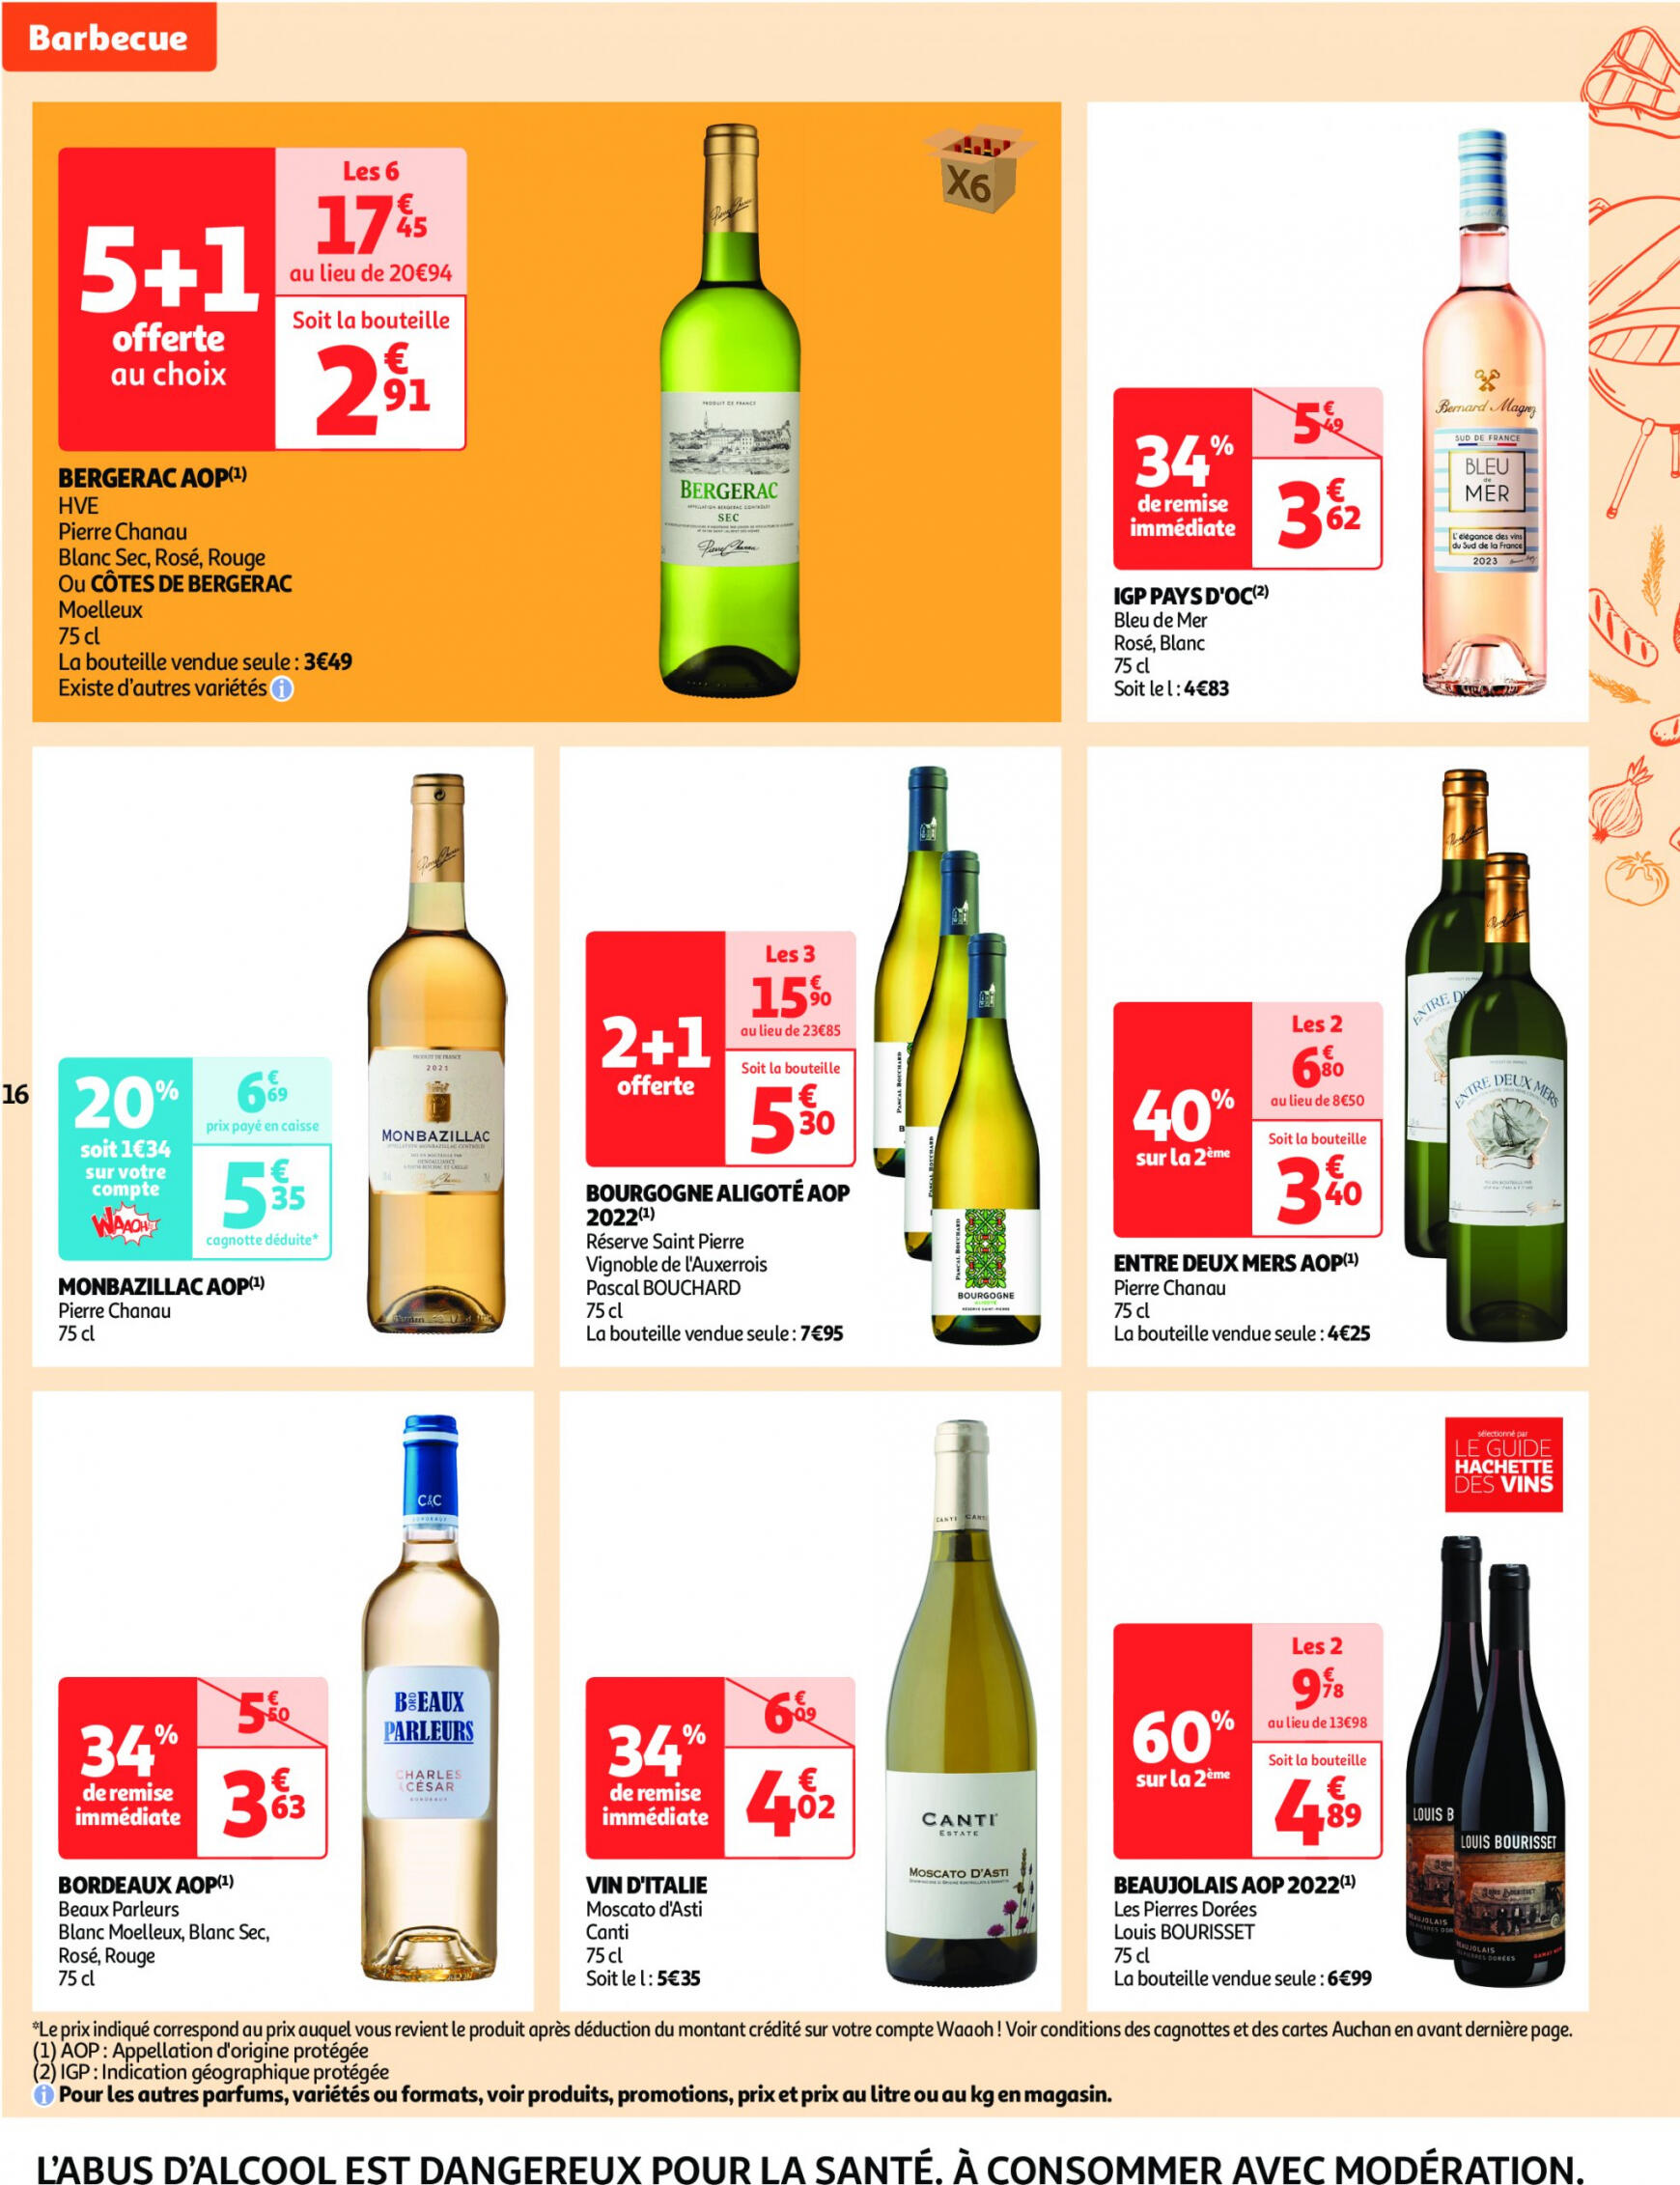 auchan - Auchan supermarché - Faites le plein de bonnes affaires folder huidig 22.05. - 26.05. - page: 16